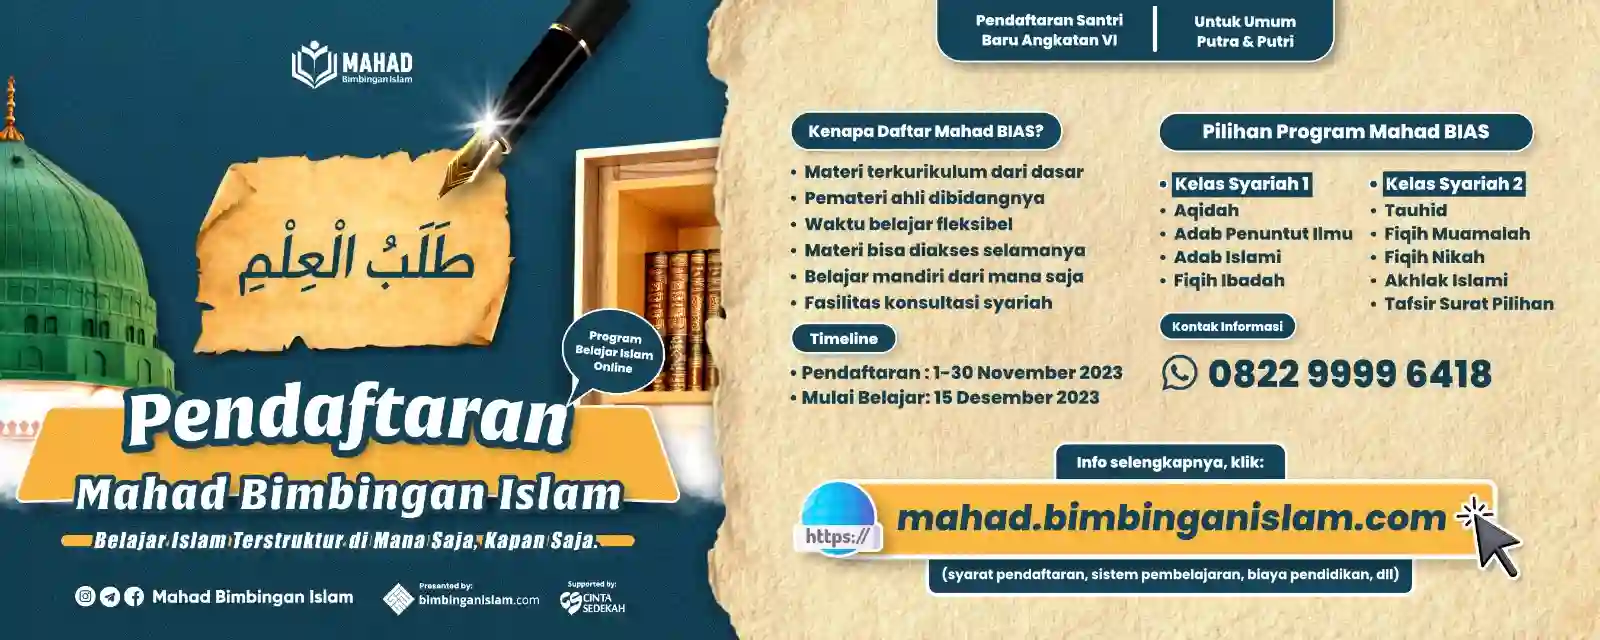 Pendaftaran Mahad Bimbingan Islam